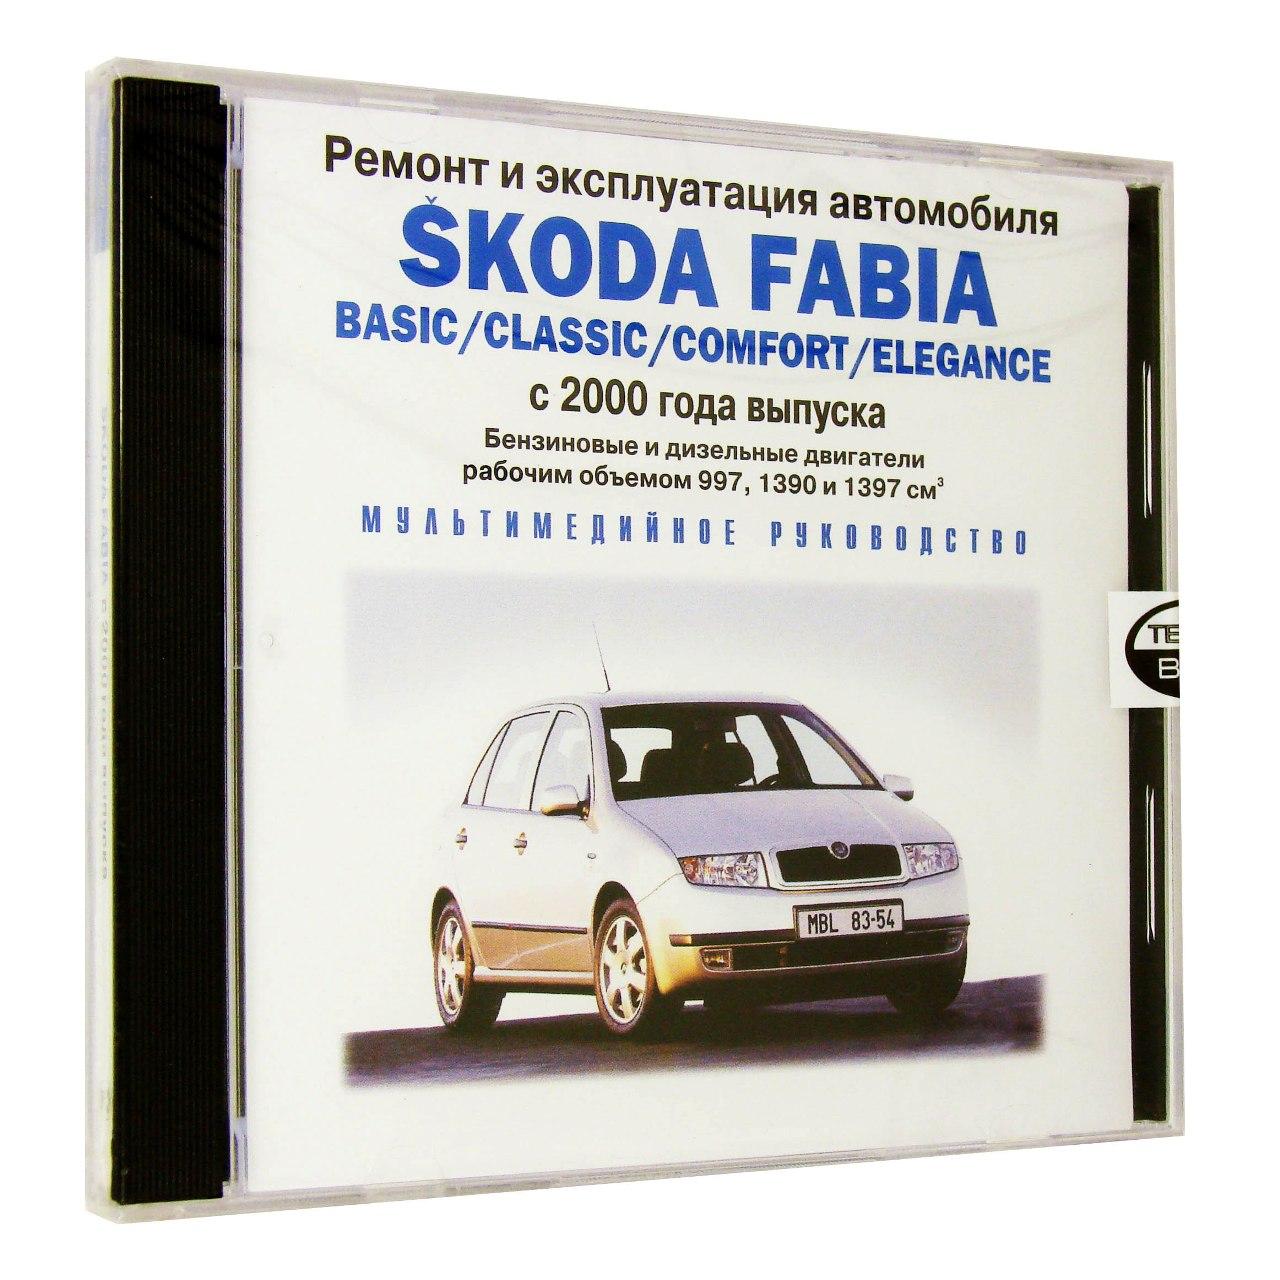 Компьютерный компакт-диск Skoda Fabia c 2000 г. в.: ремонт и эксплуатация автомобиля (ПК), фирма RMG Multimedia, 1CD